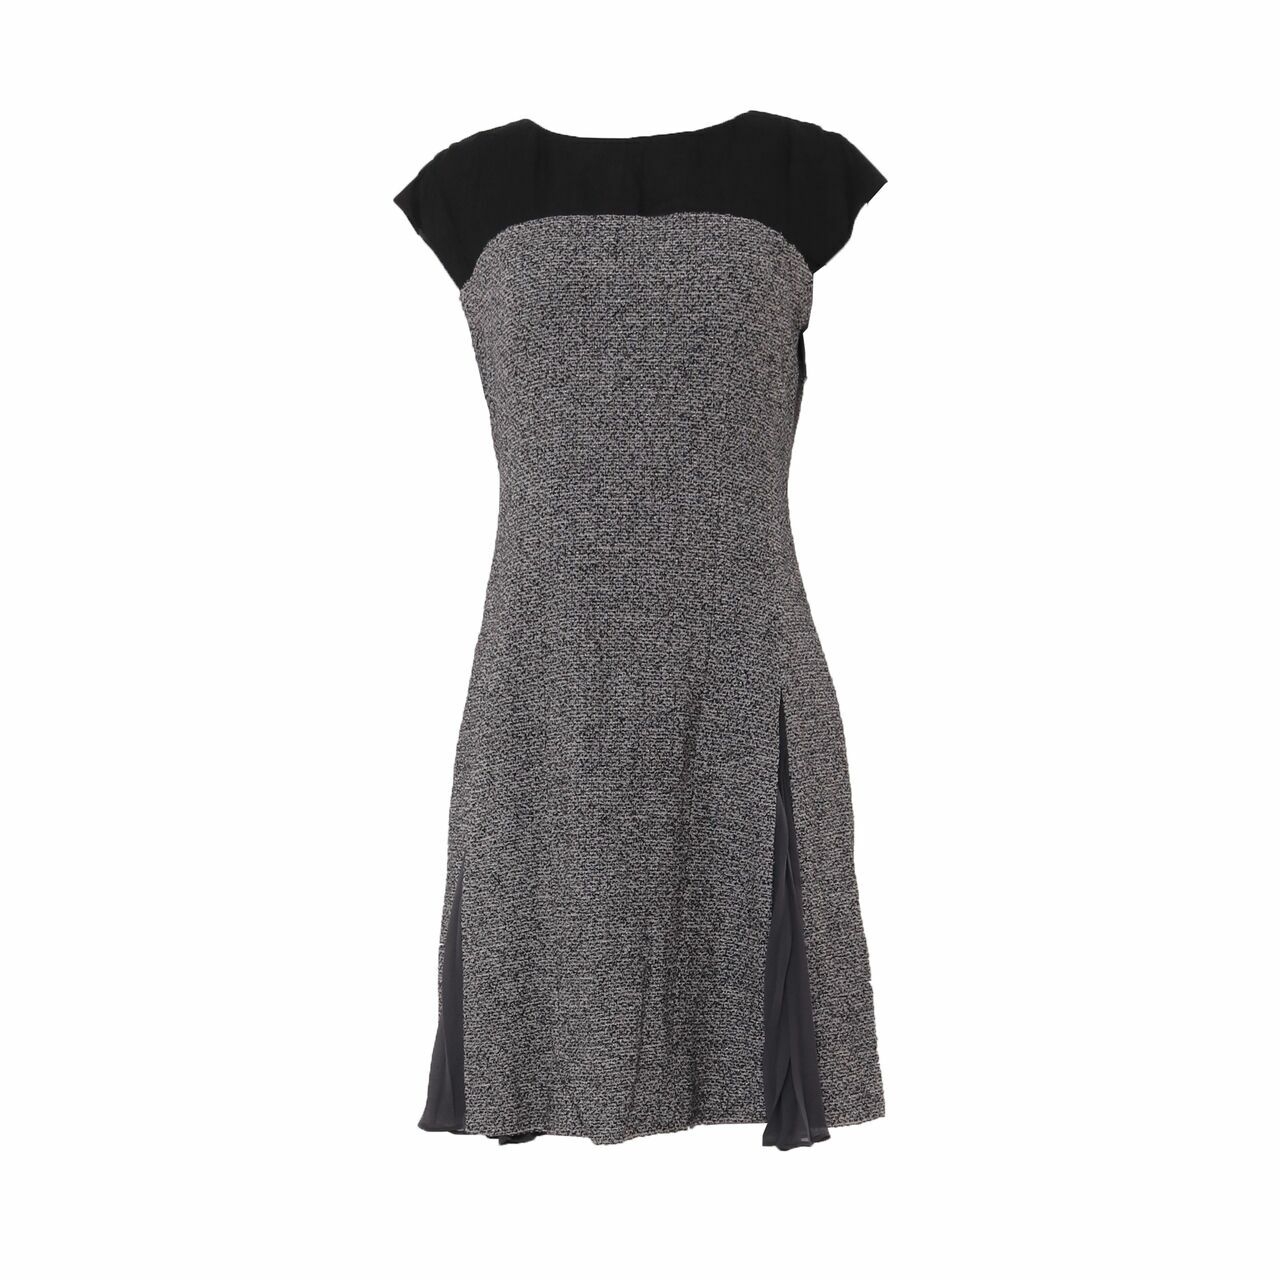 Jill Stuart Black & Grey Mini Dress